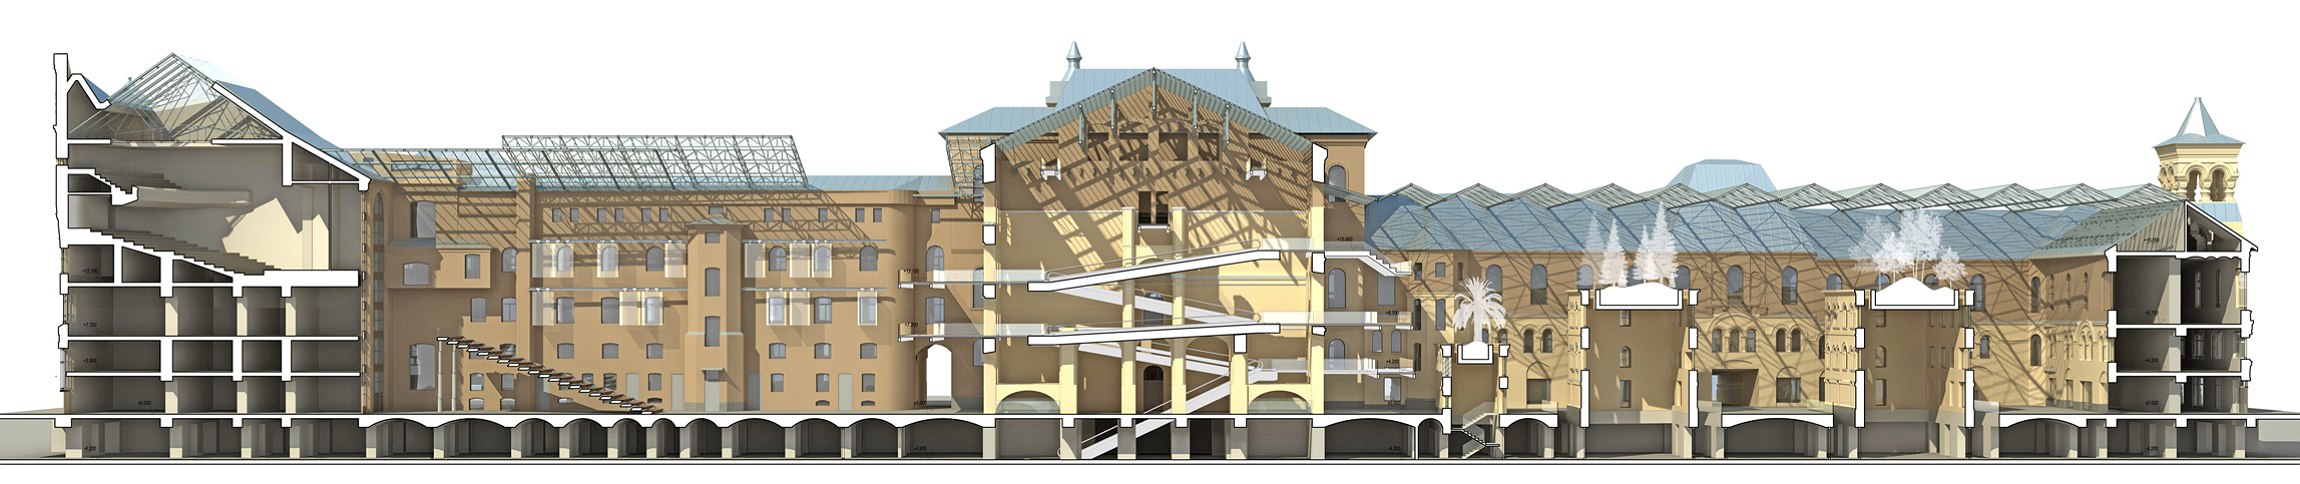 Реконструкция политехнического музея в Москве